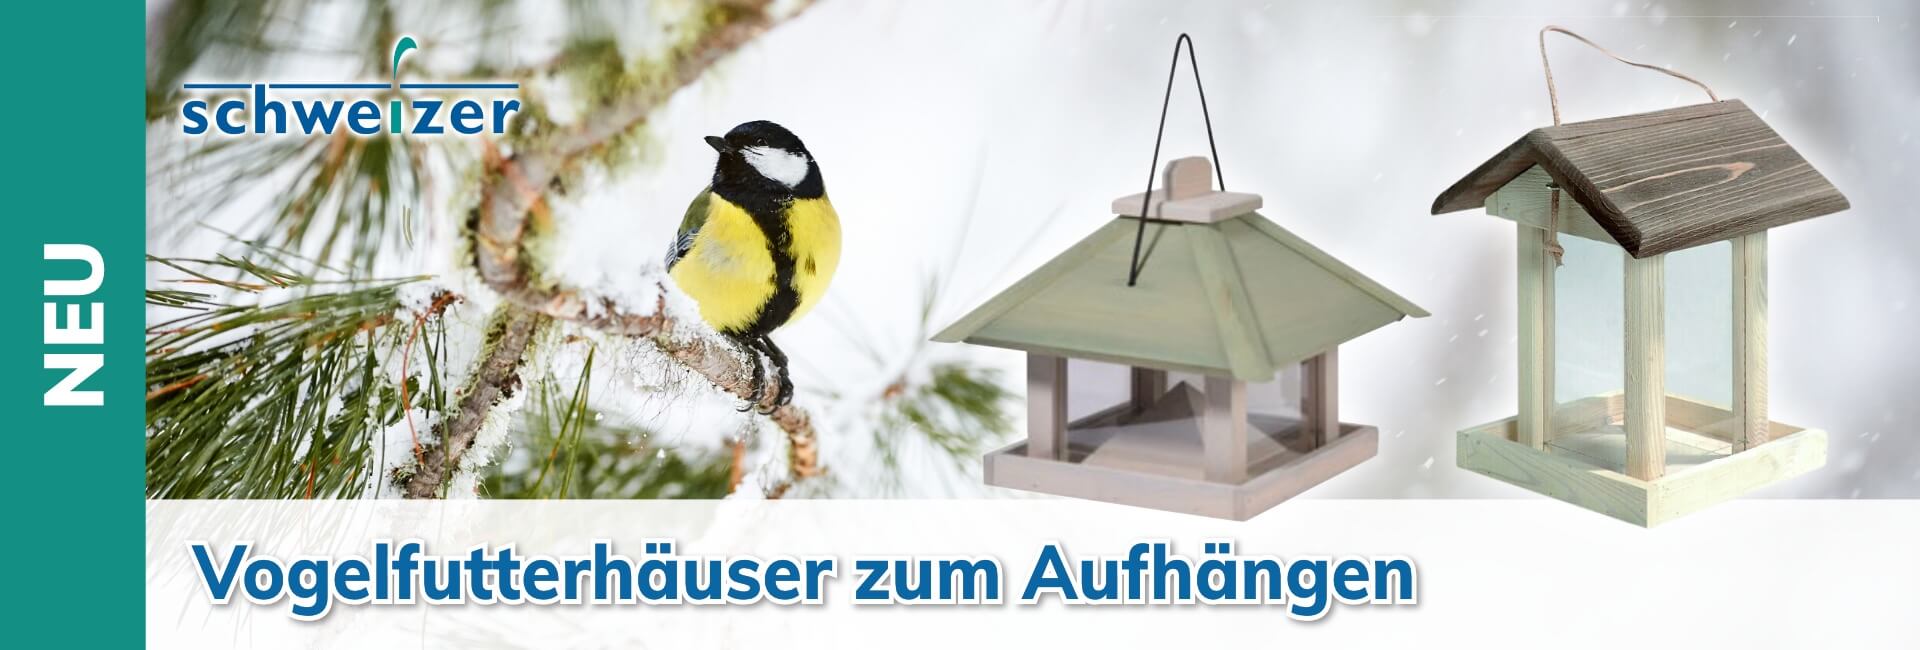 Schweizer Vogelfutterhäuser zum Aufhängen